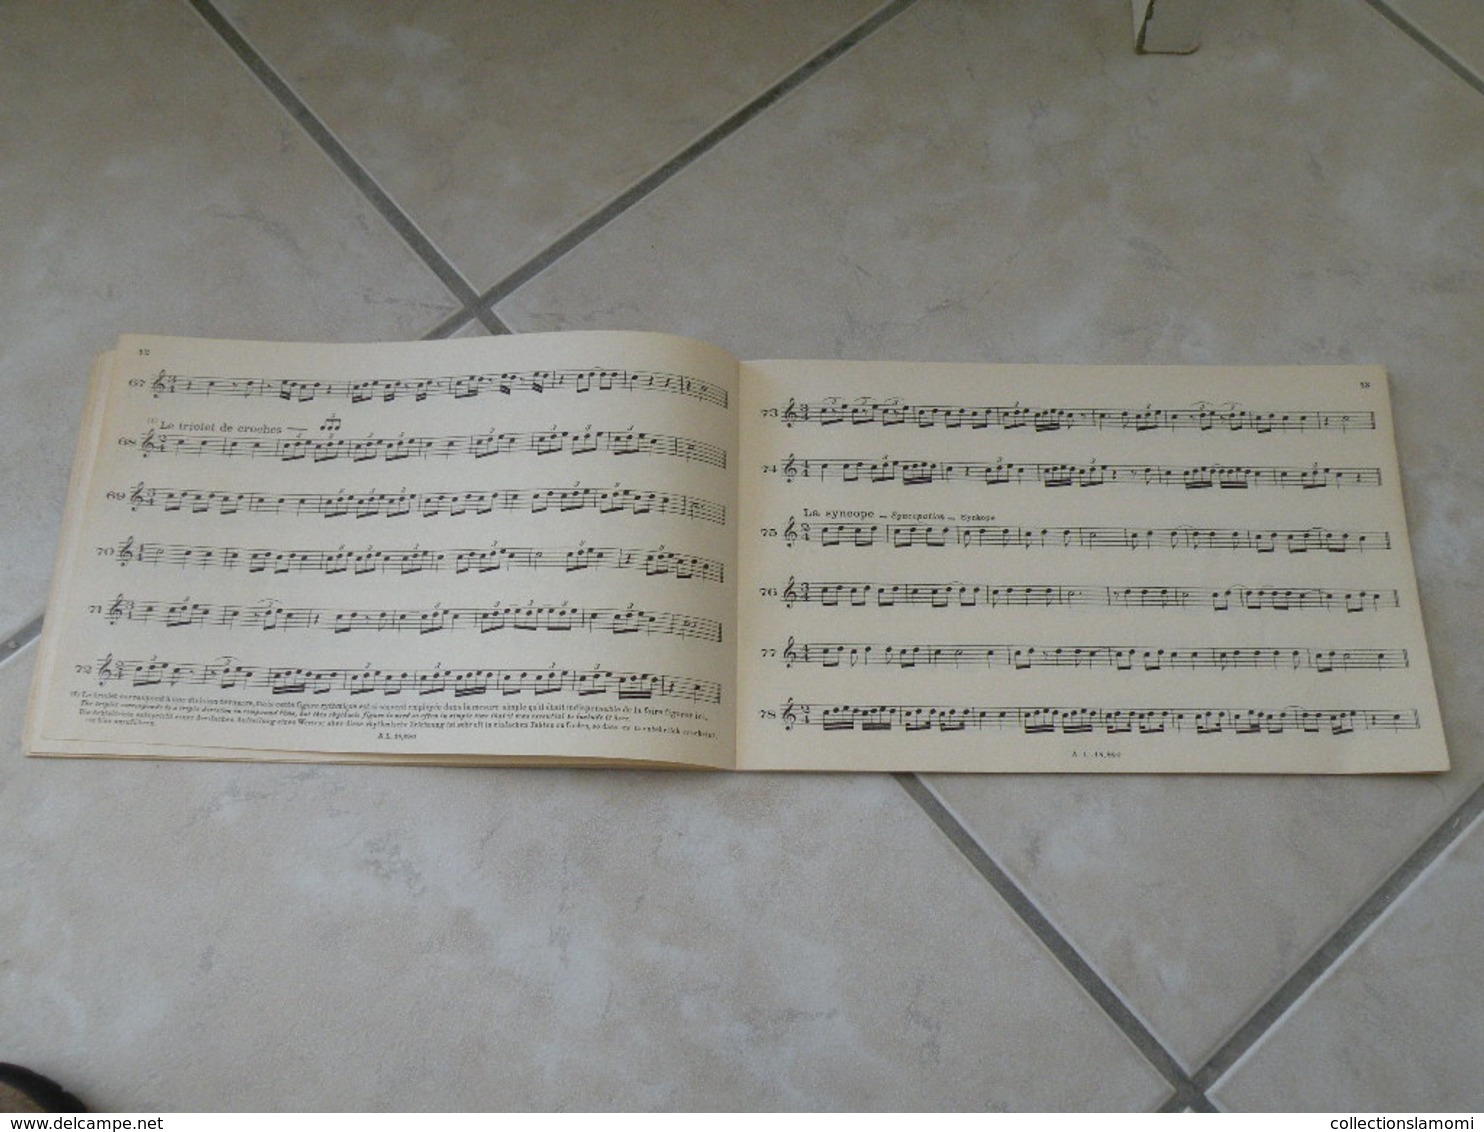 Étude du rythme - Georges Dandelot. Professeur école normale de musique - Musique classique 1935